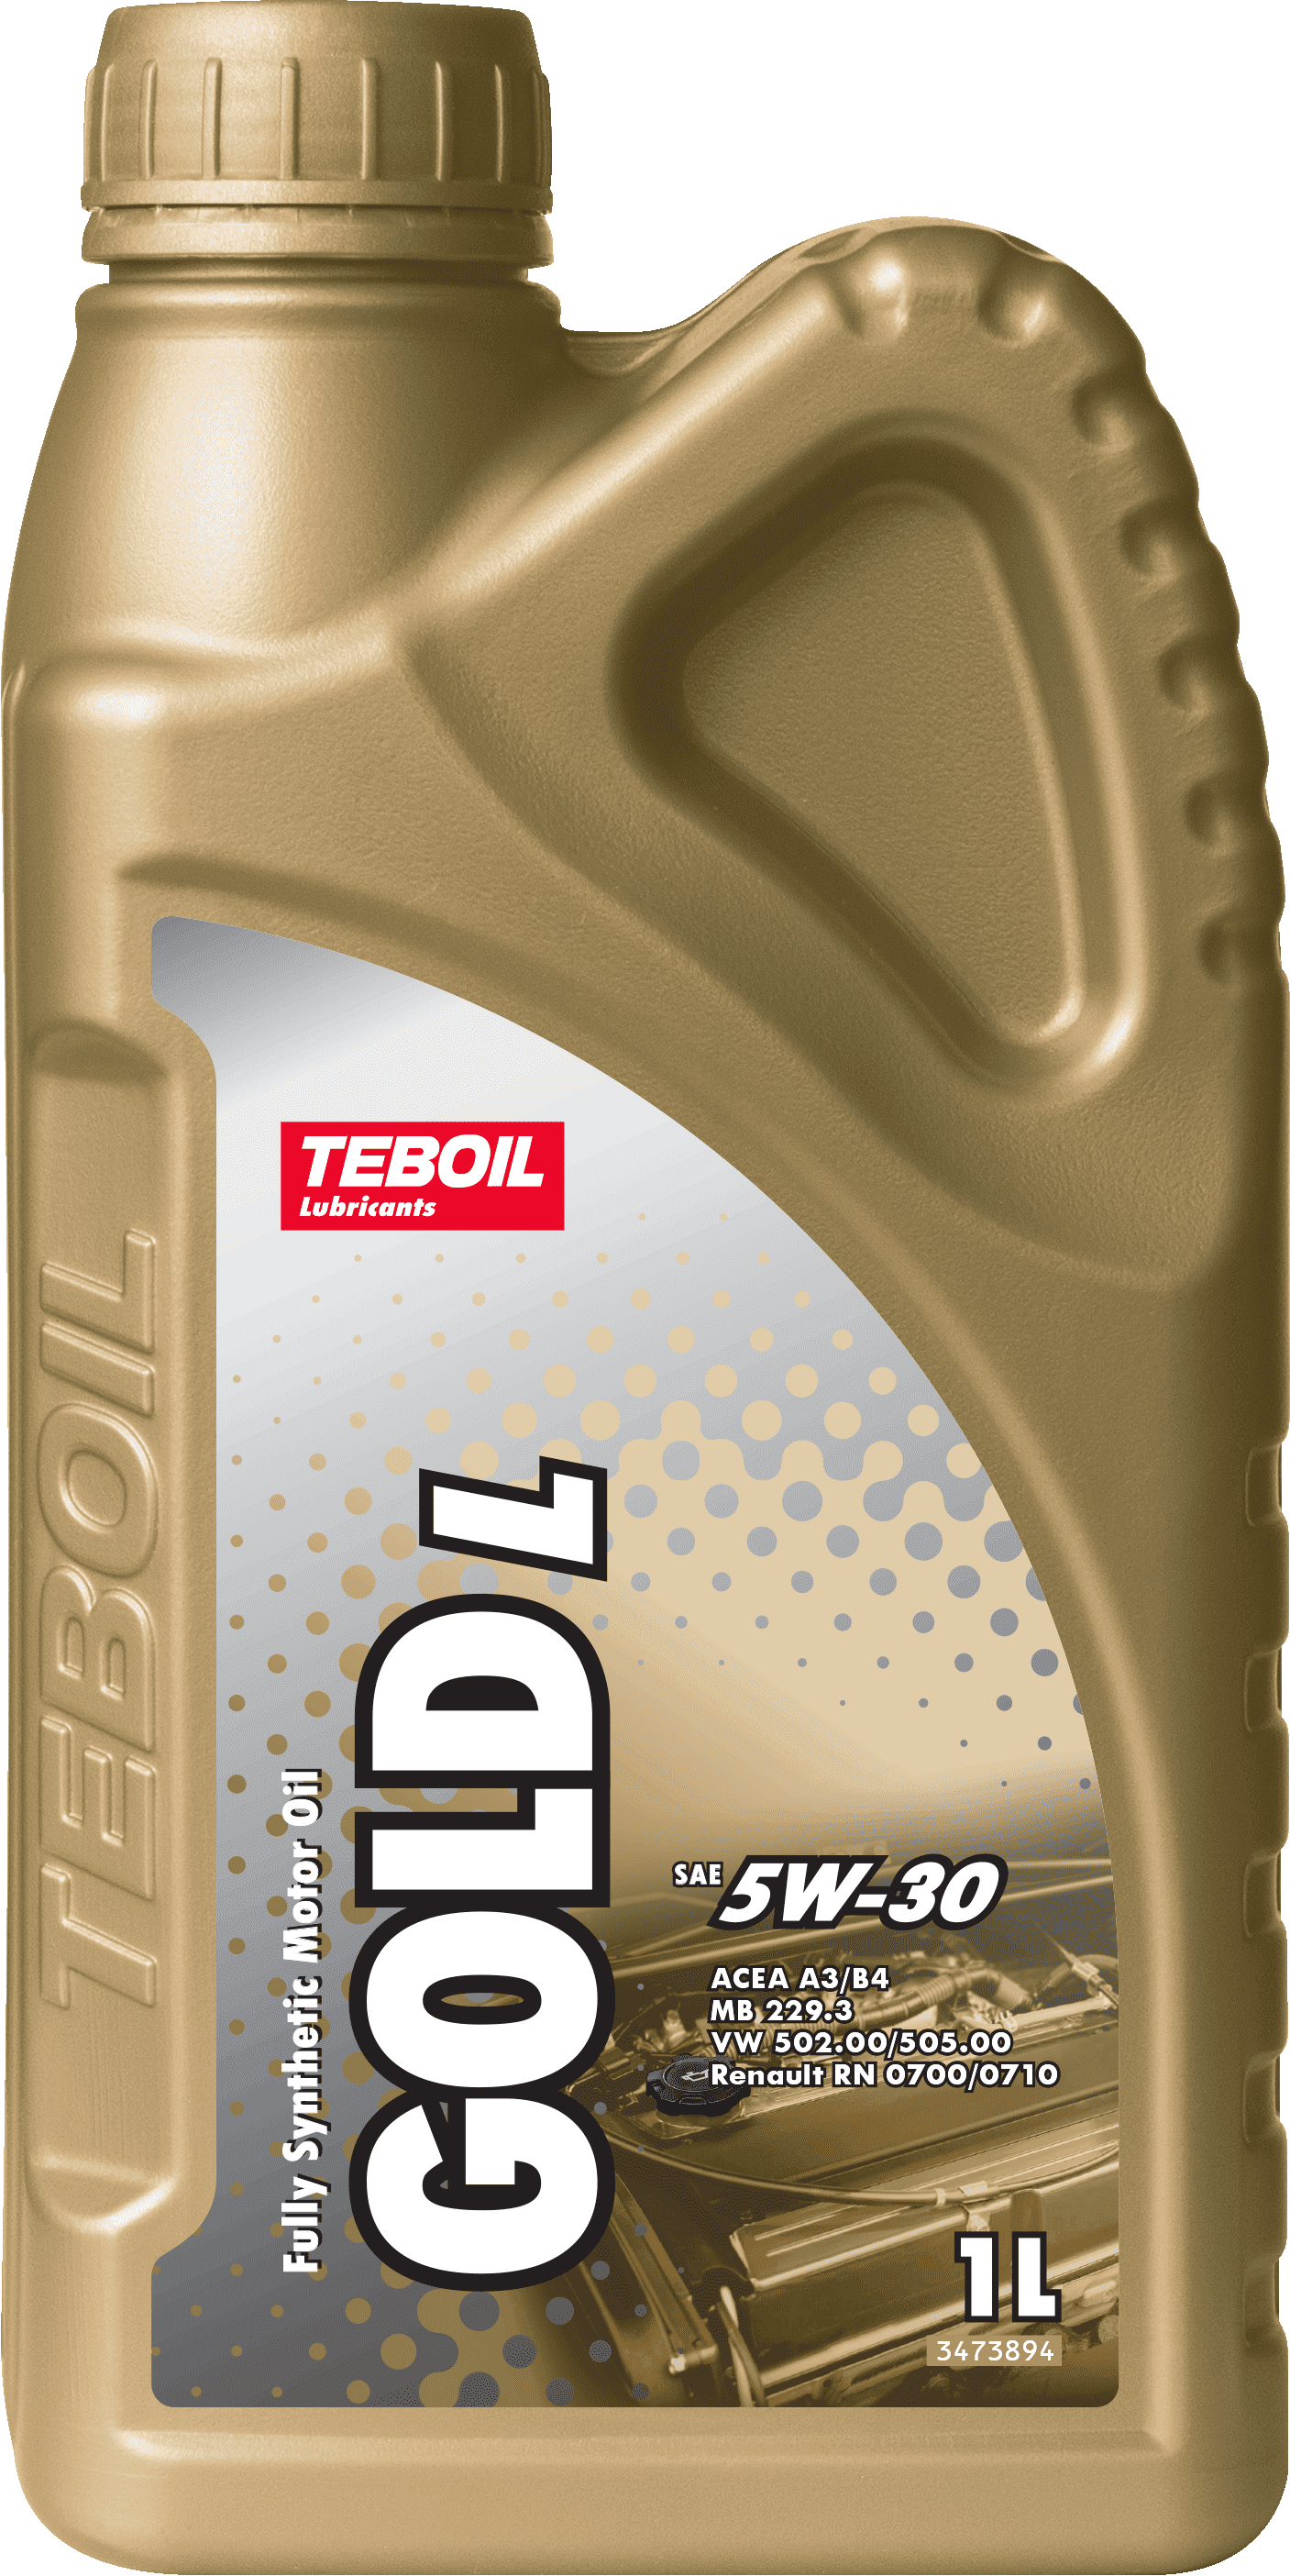 Teboil Gold L 5W-30: полностью синтетическое моторное масло для .